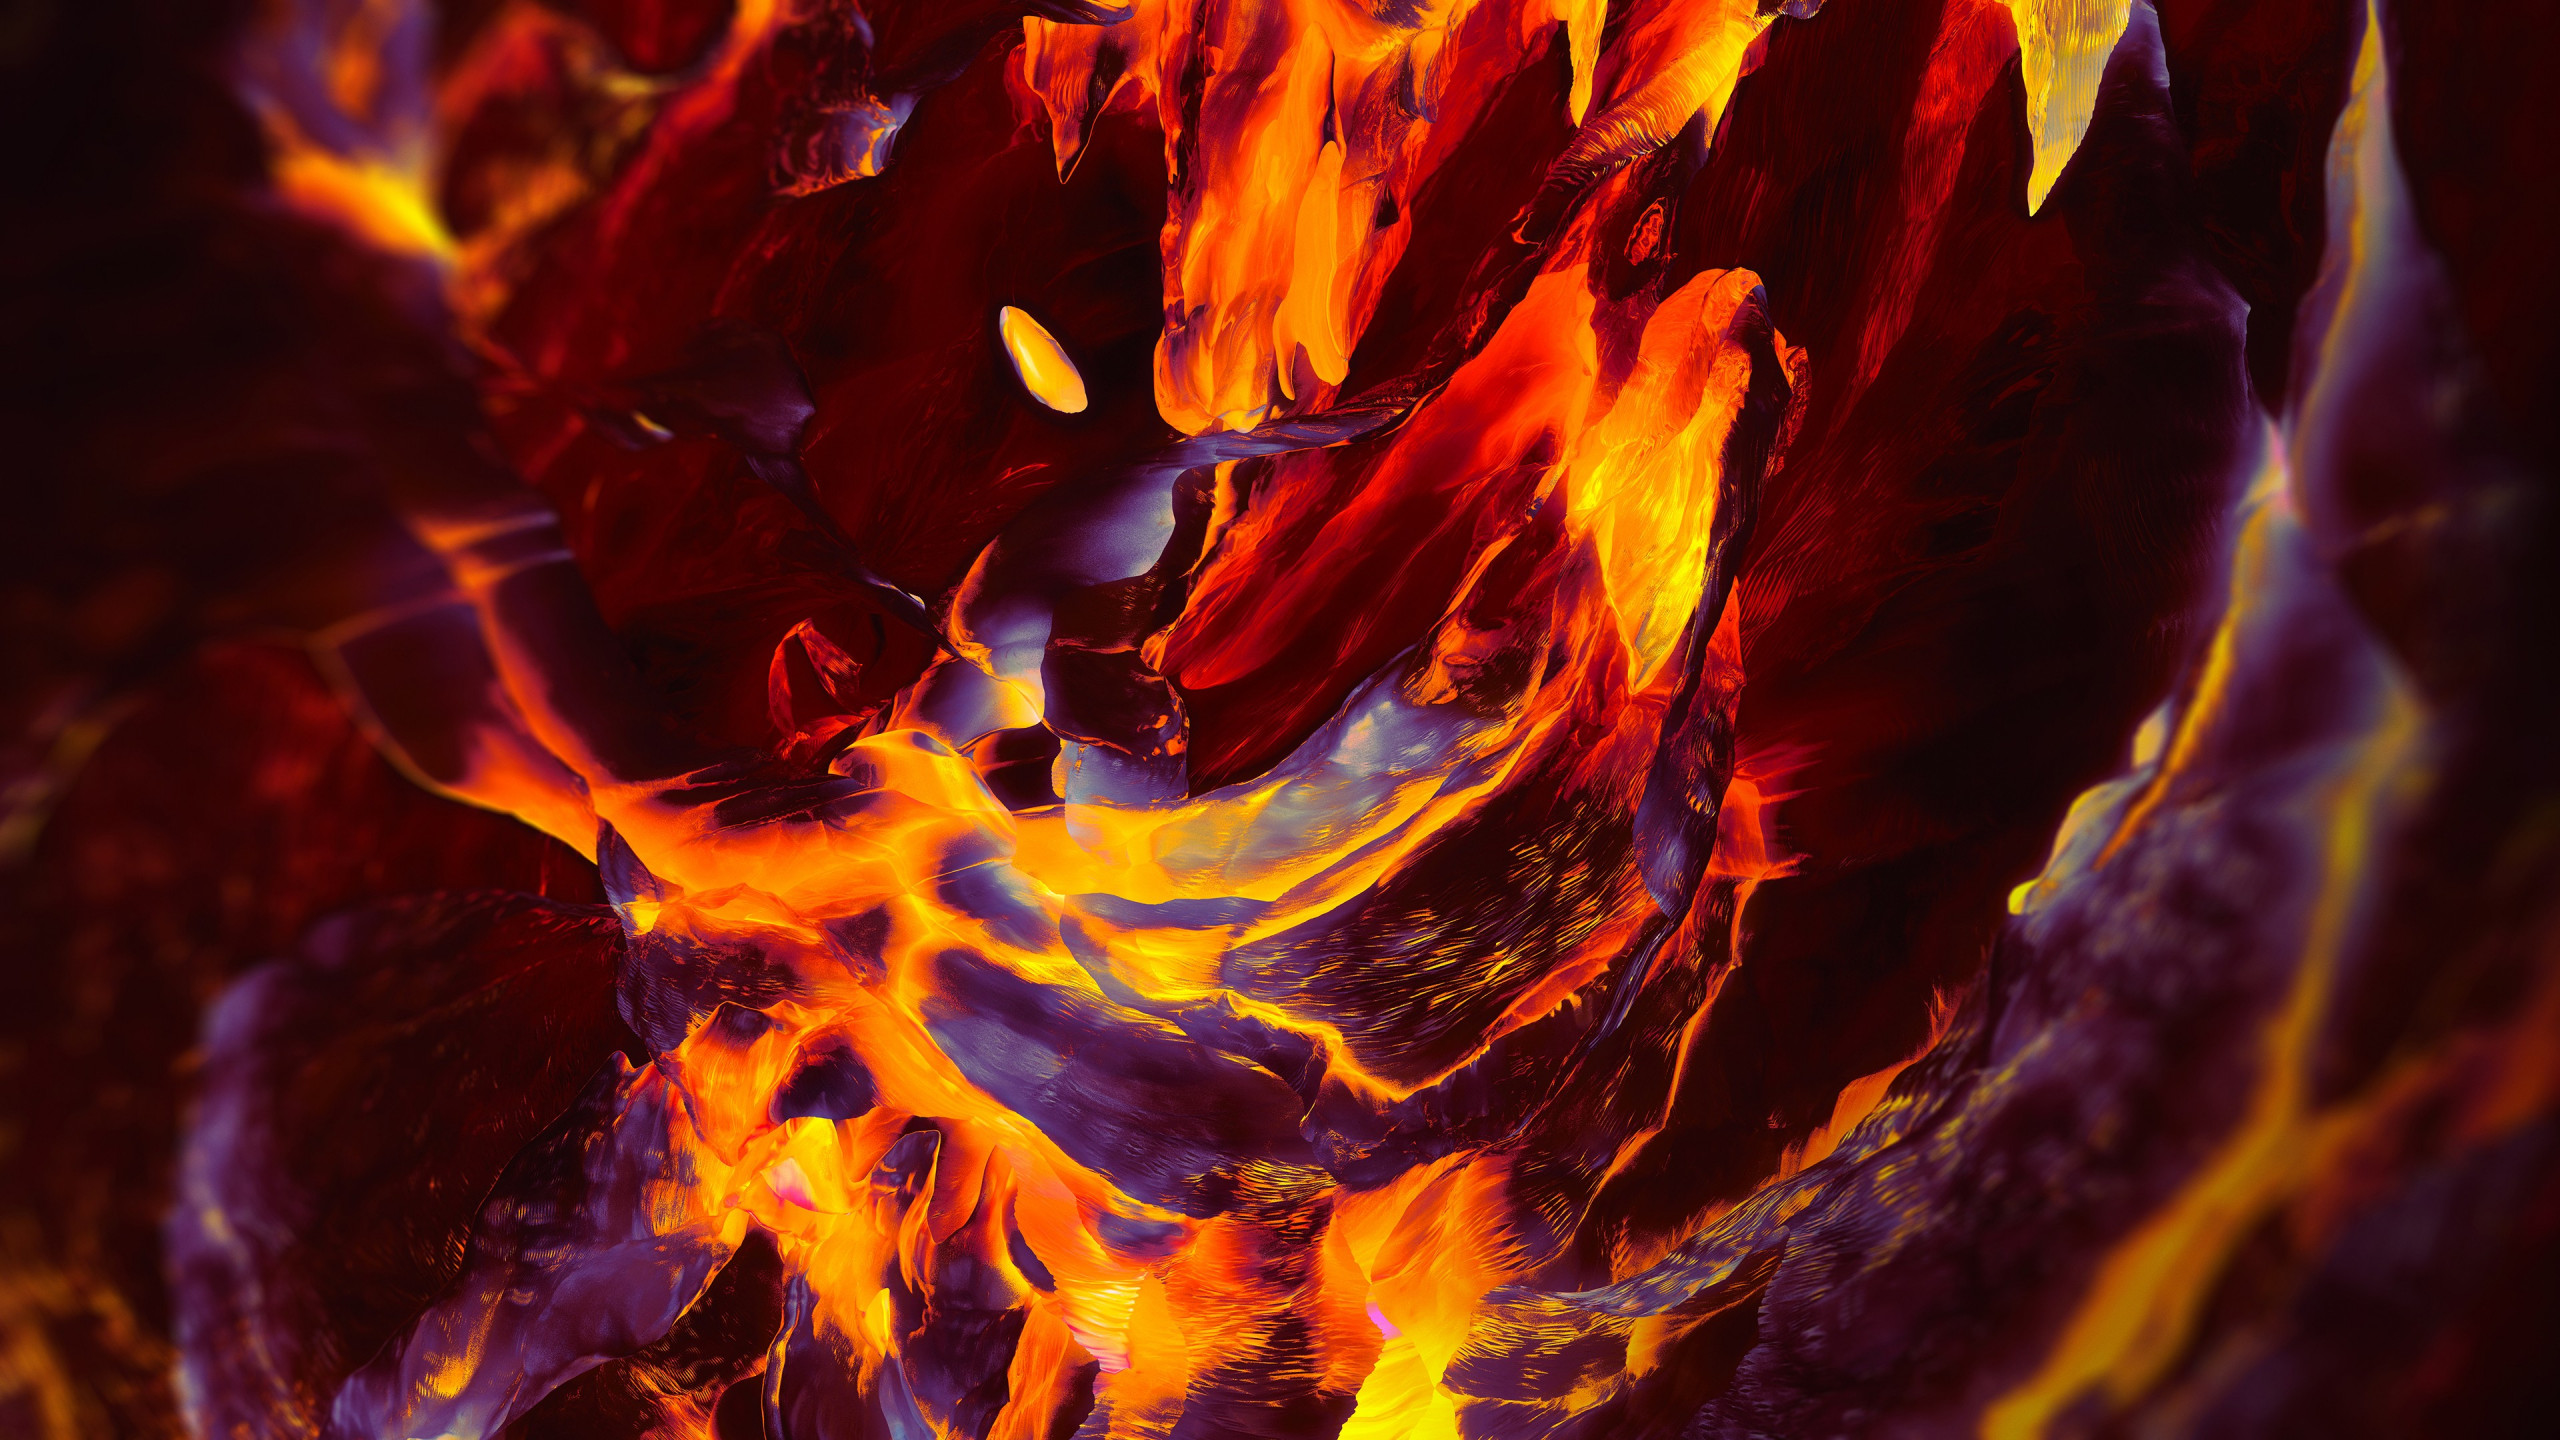 OnePlus Fire wallpaper 2560x1440